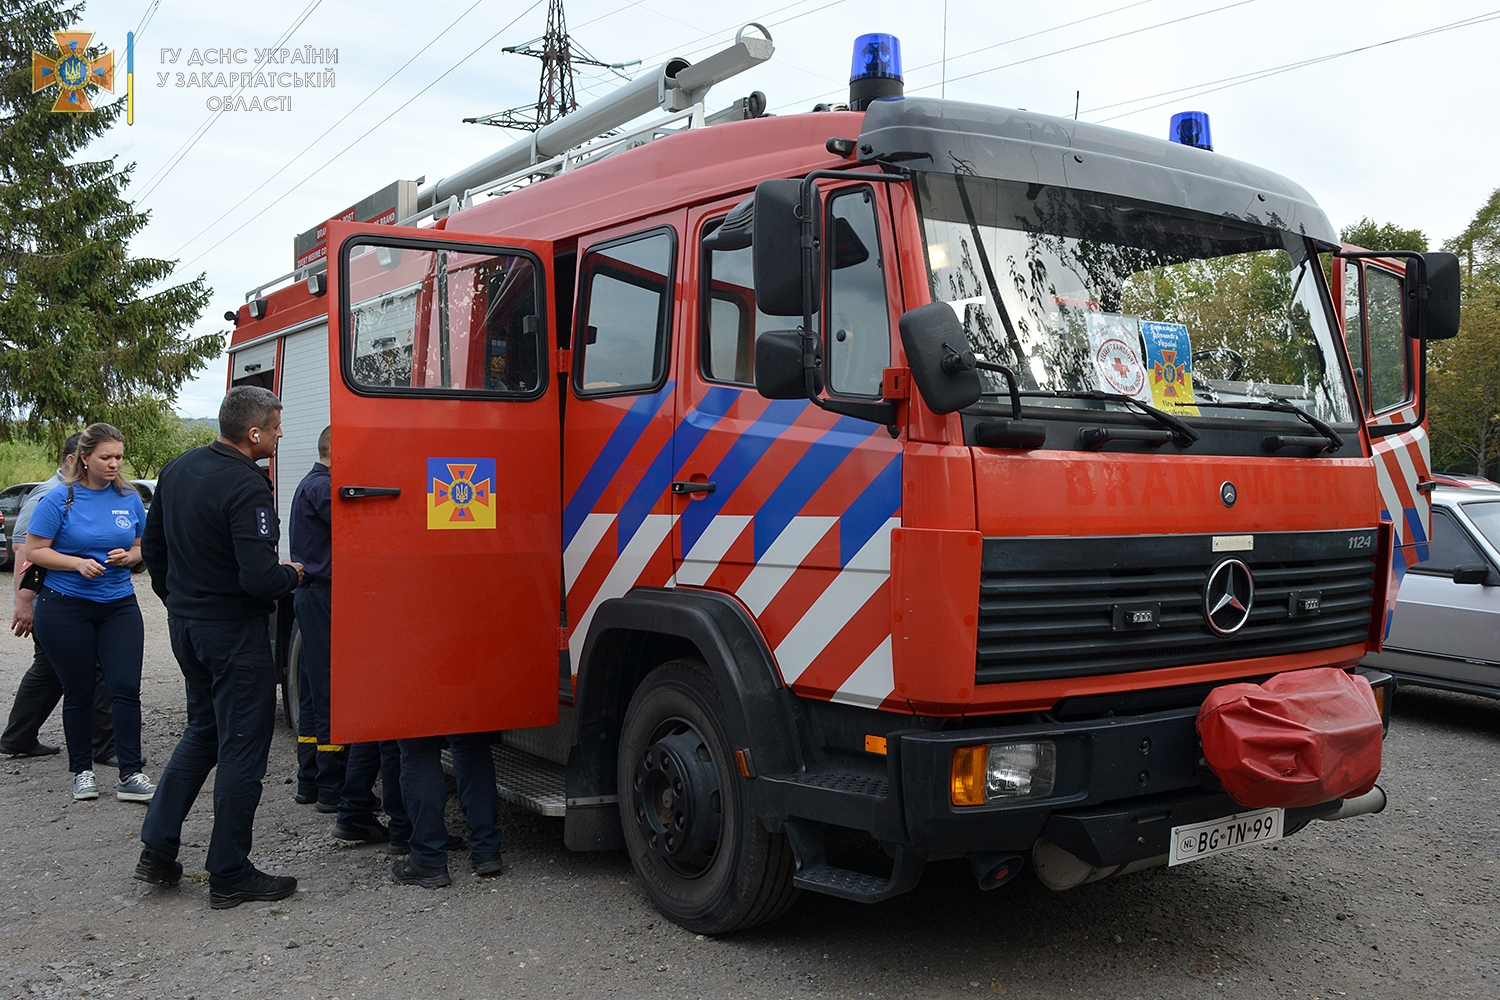 Закордонні колеги українських рятувальників не стоять осторонь – сьогодні на Закарпаття приїхала автоцистерна марки Mercedes-Benz із Нідерландів.